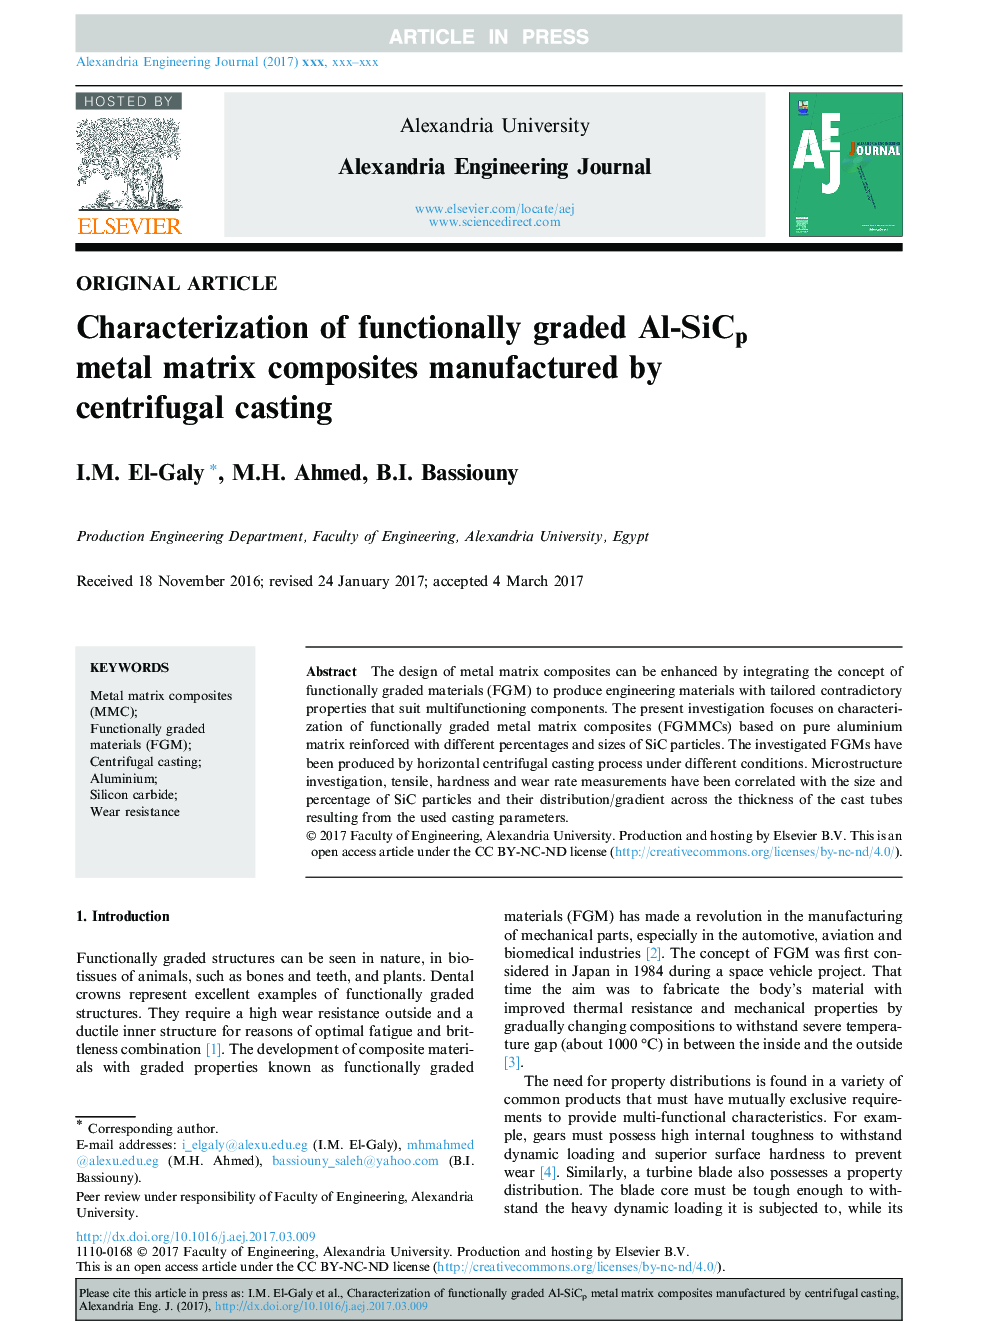 مشخصه های کامپوزیت های ماتریس فلز آلومینیوم عملکردی تولید شده توسط ریخته گری گریز از مرکز 